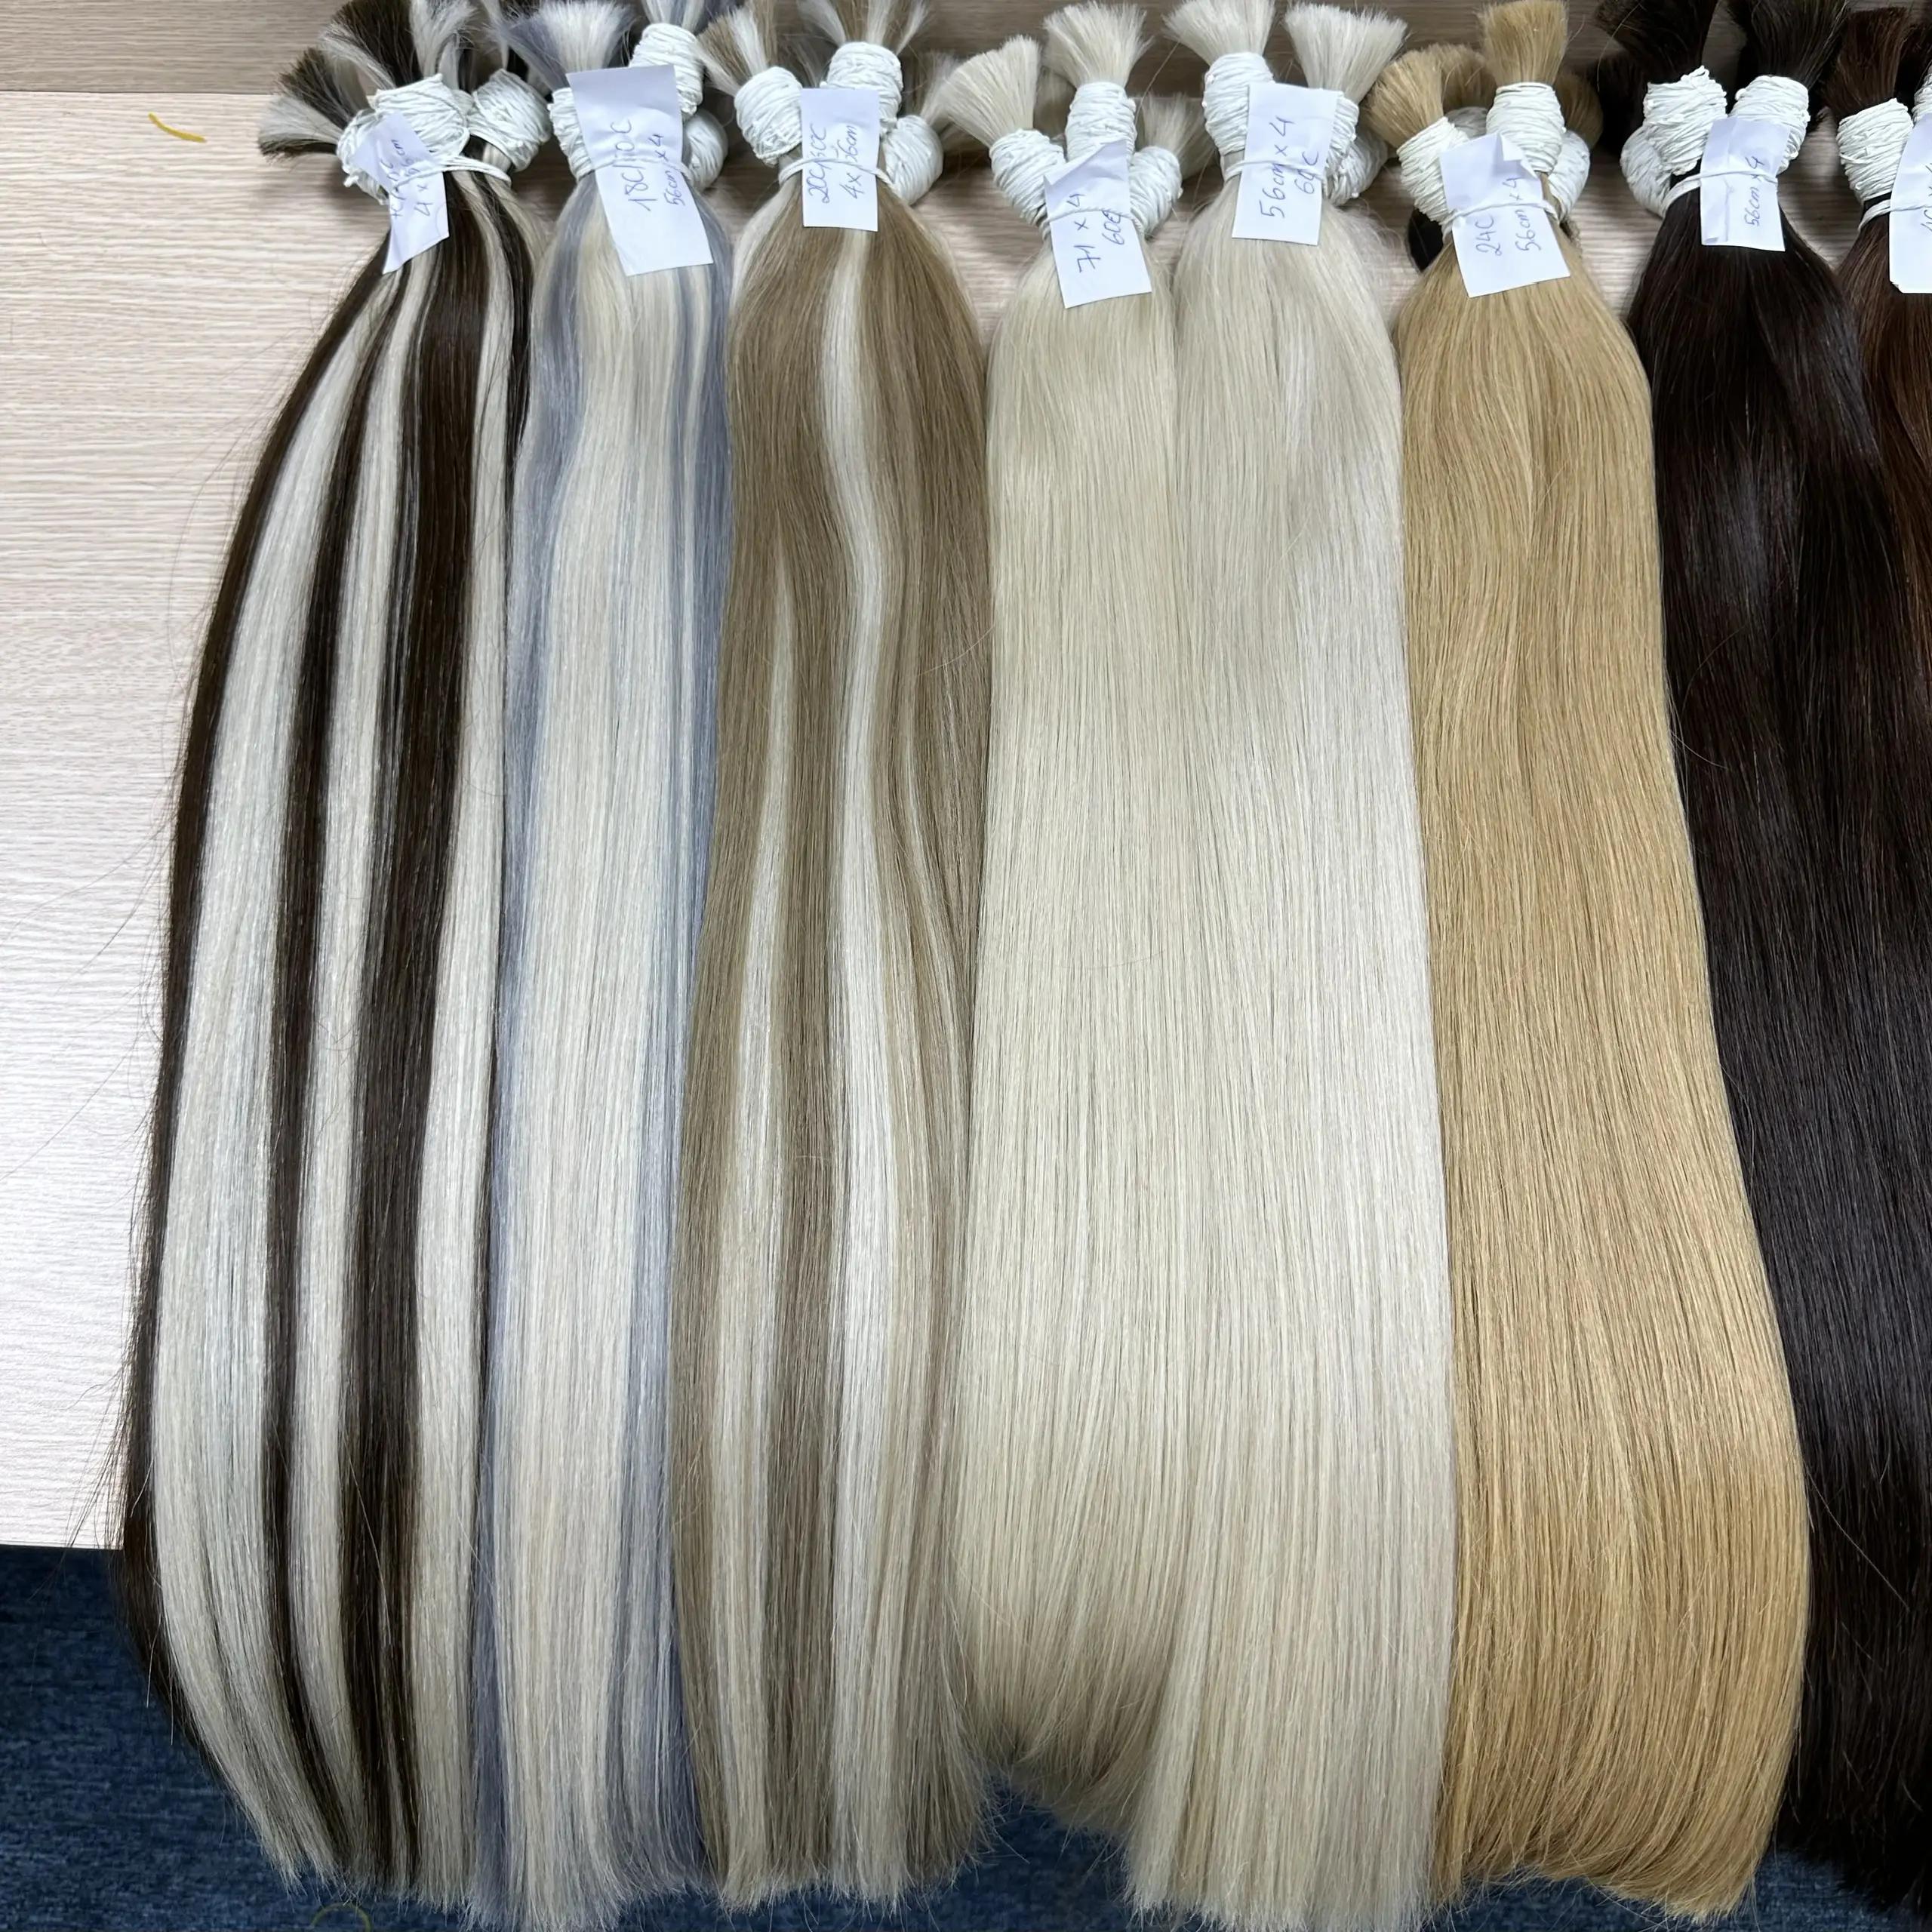 Волосы Belady 100% натуральных человеческих волос объемные все цвета для наращивания волос от Viet Nam